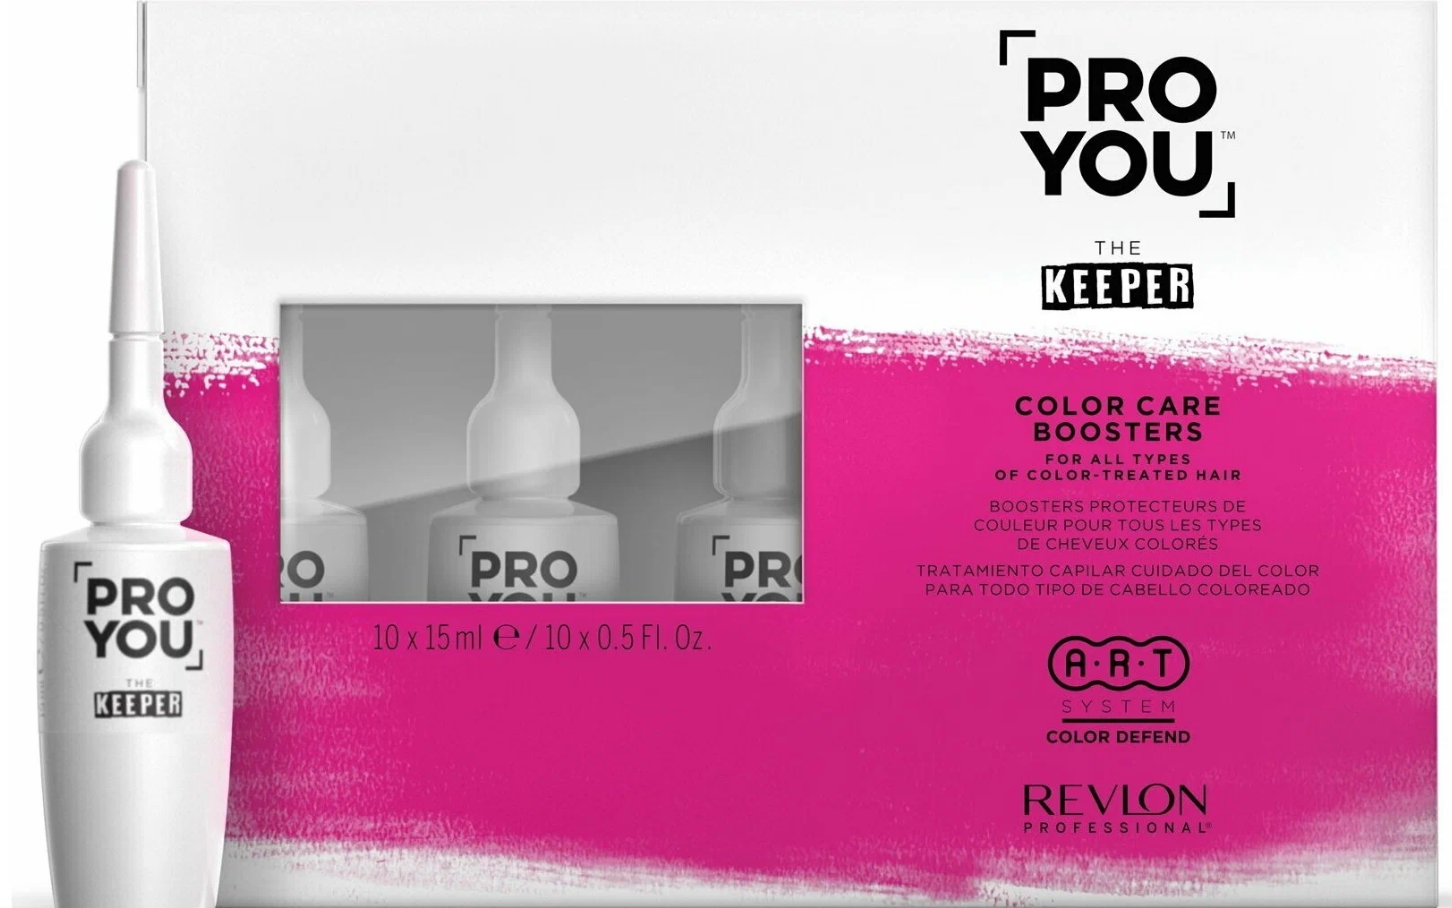 Бустер защита цвета для всех типов окрашенных волос Color Care Pro You Keeper 10*15 мл